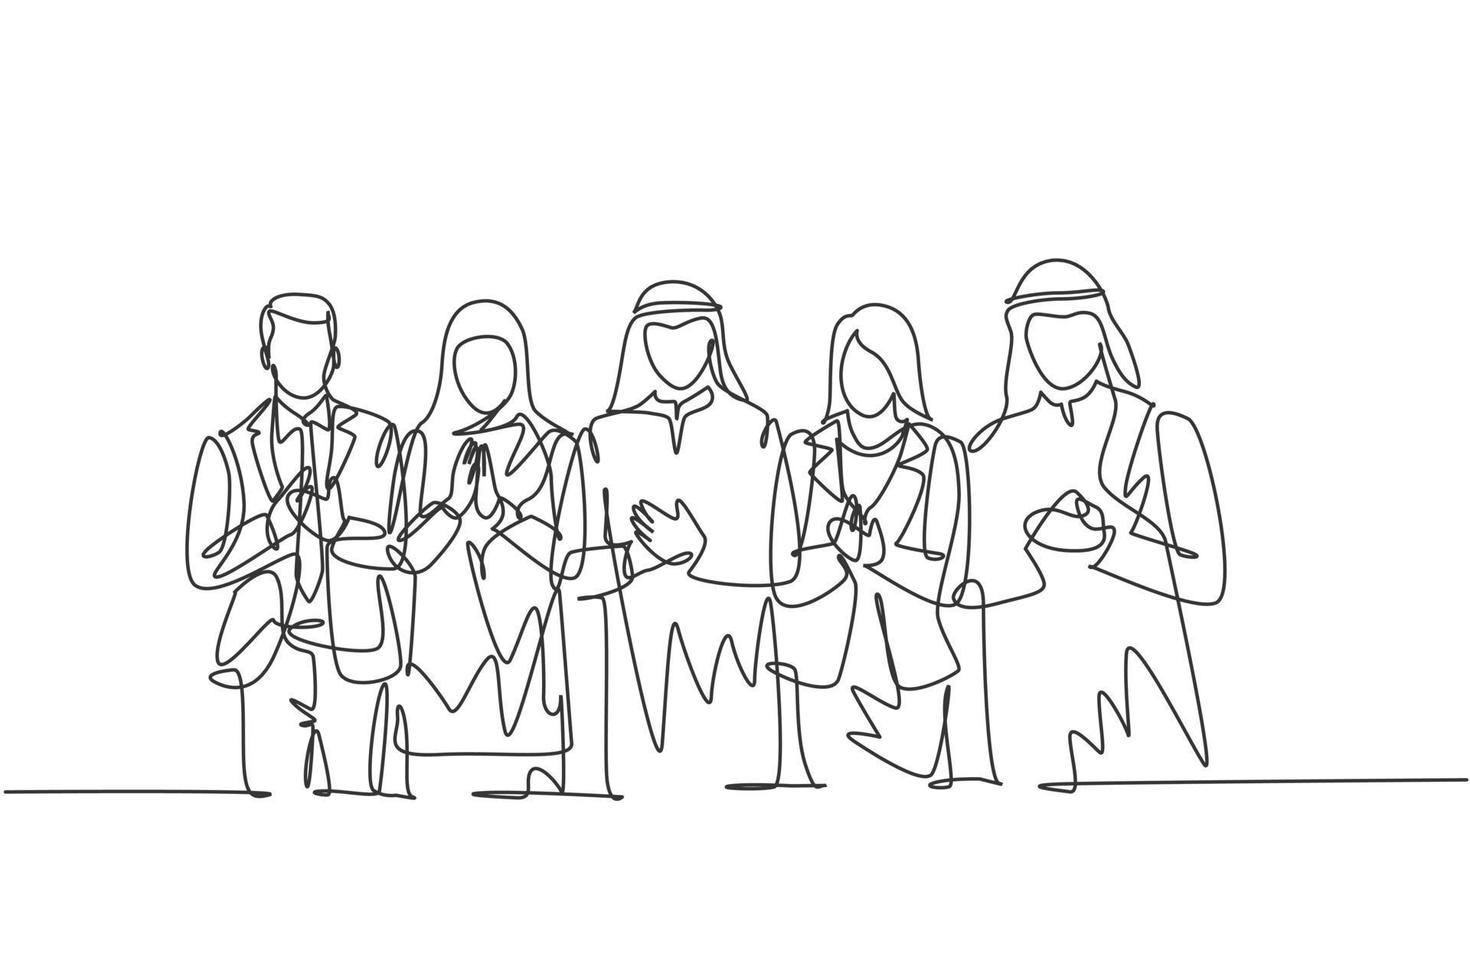 een doorlopende lijntekening van jonge zakenlieden en zakenvrouwen staan samen in de rij terwijl ze in de handen klappen. islamitische kleding shemag, hijab, sjaal, keffiyeh. enkele lijn tekenen ontwerp vectorillustratie vector